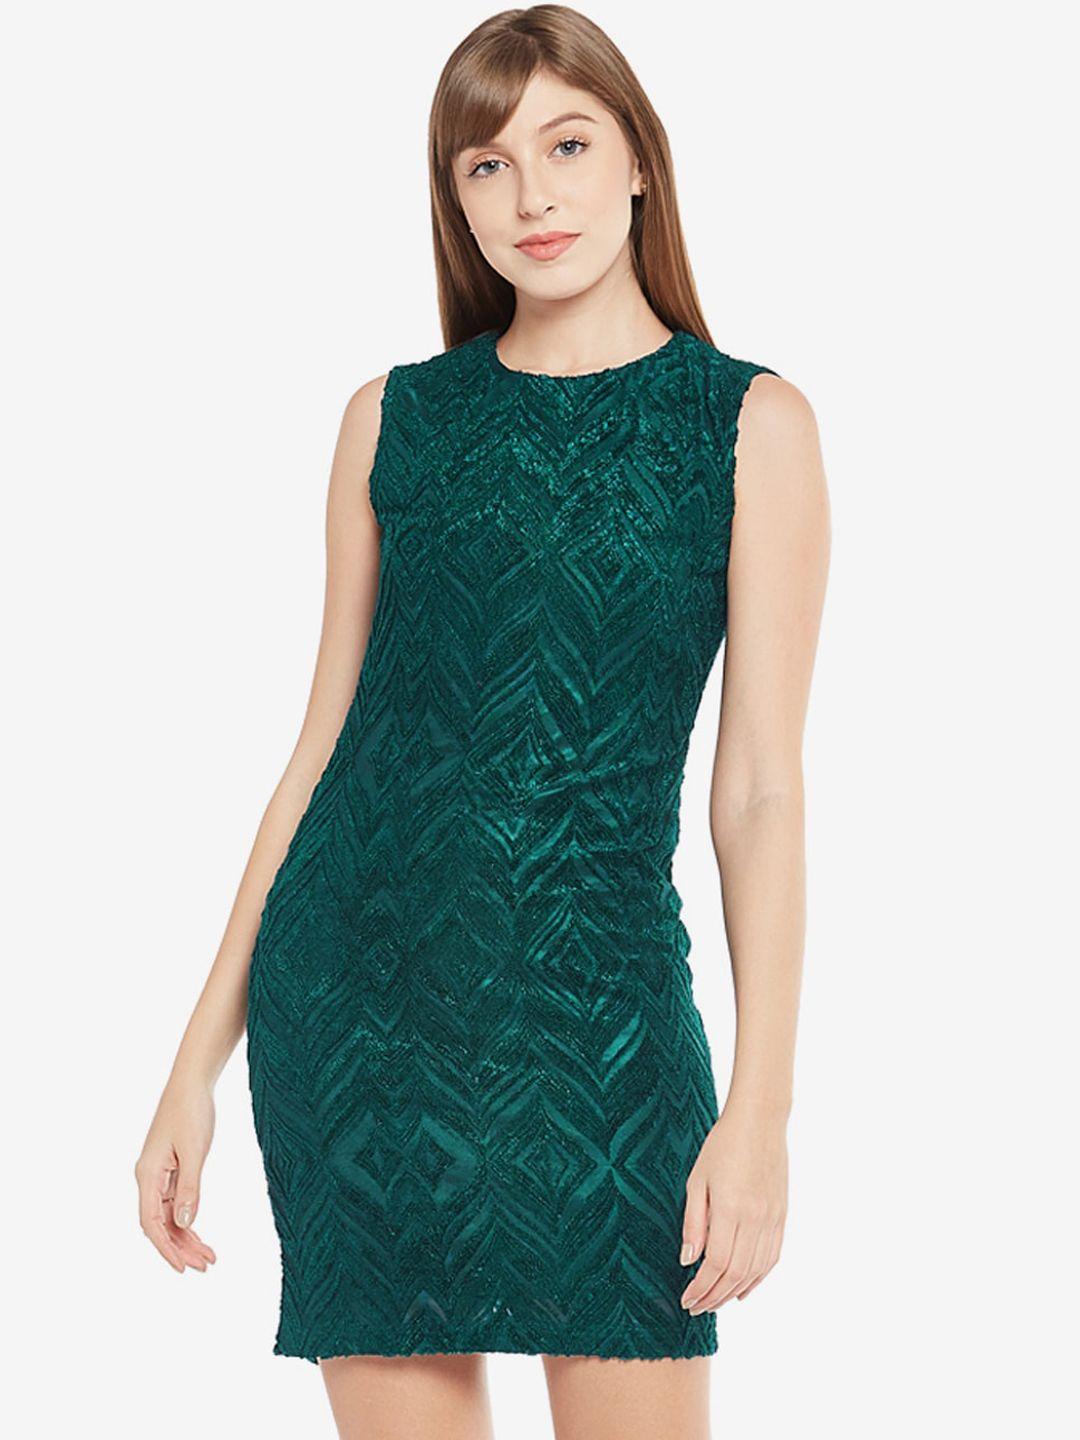 emmyrobe green sheath dress